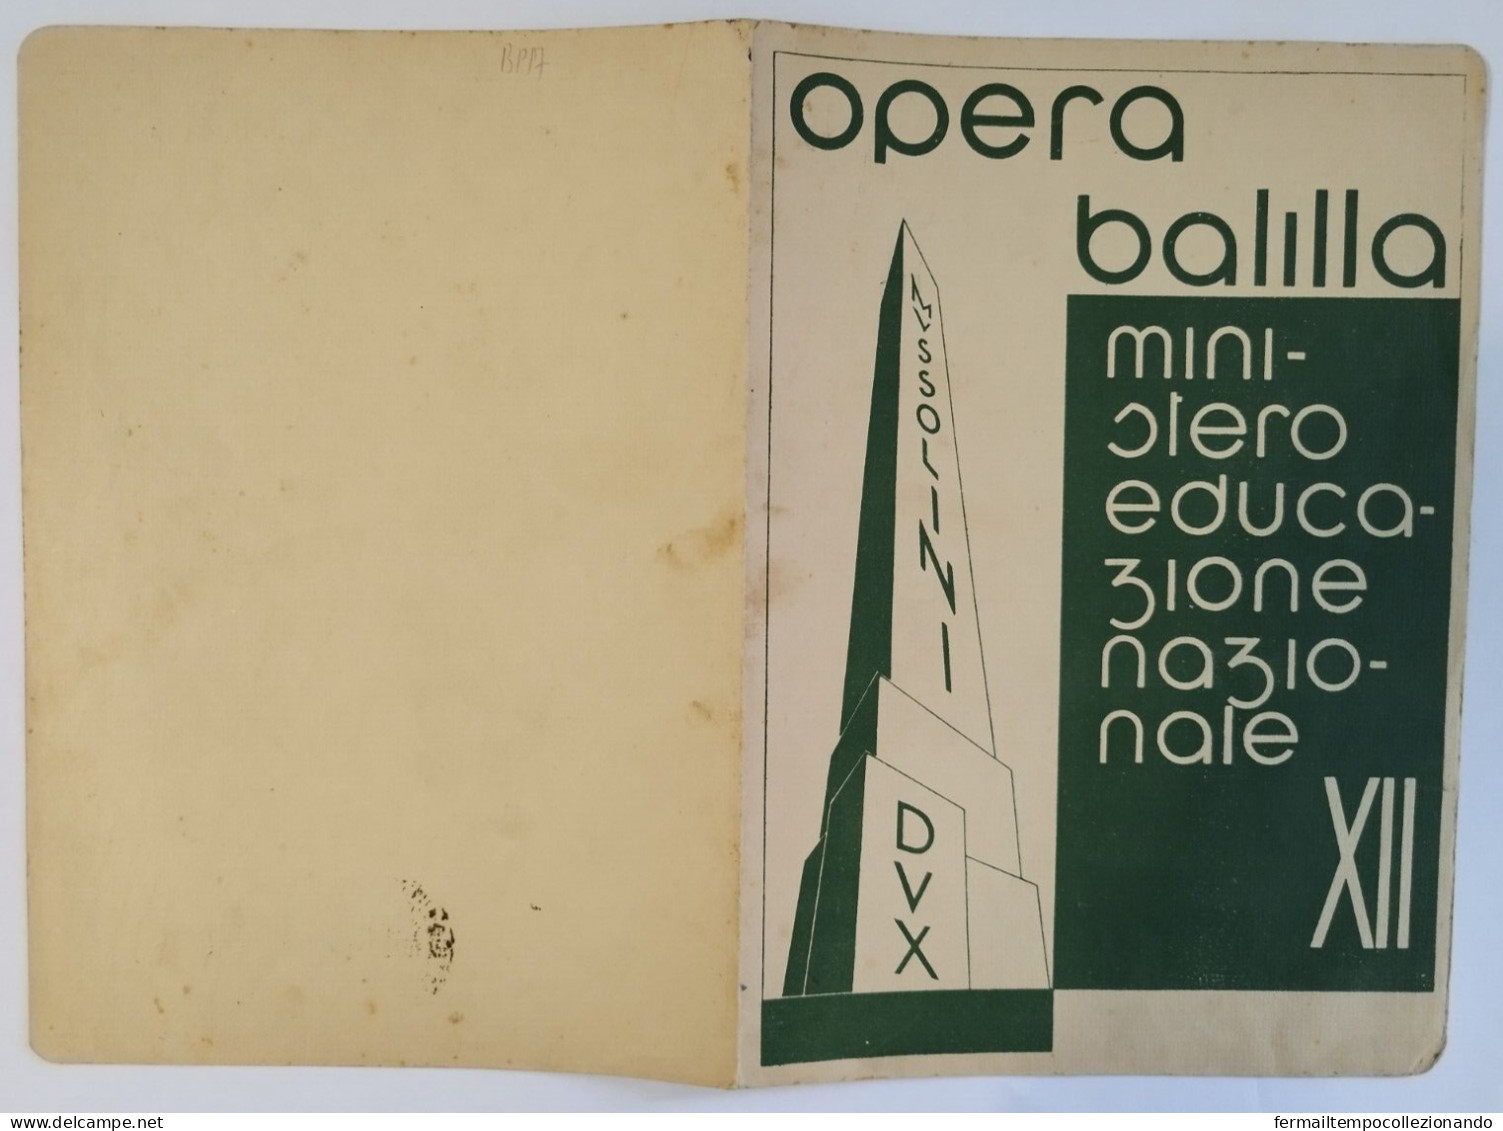 Bp17 Pagella Fascista Opera Balilla Ministero Educazione Nazionale Napoli 1934 - Diplomi E Pagelle